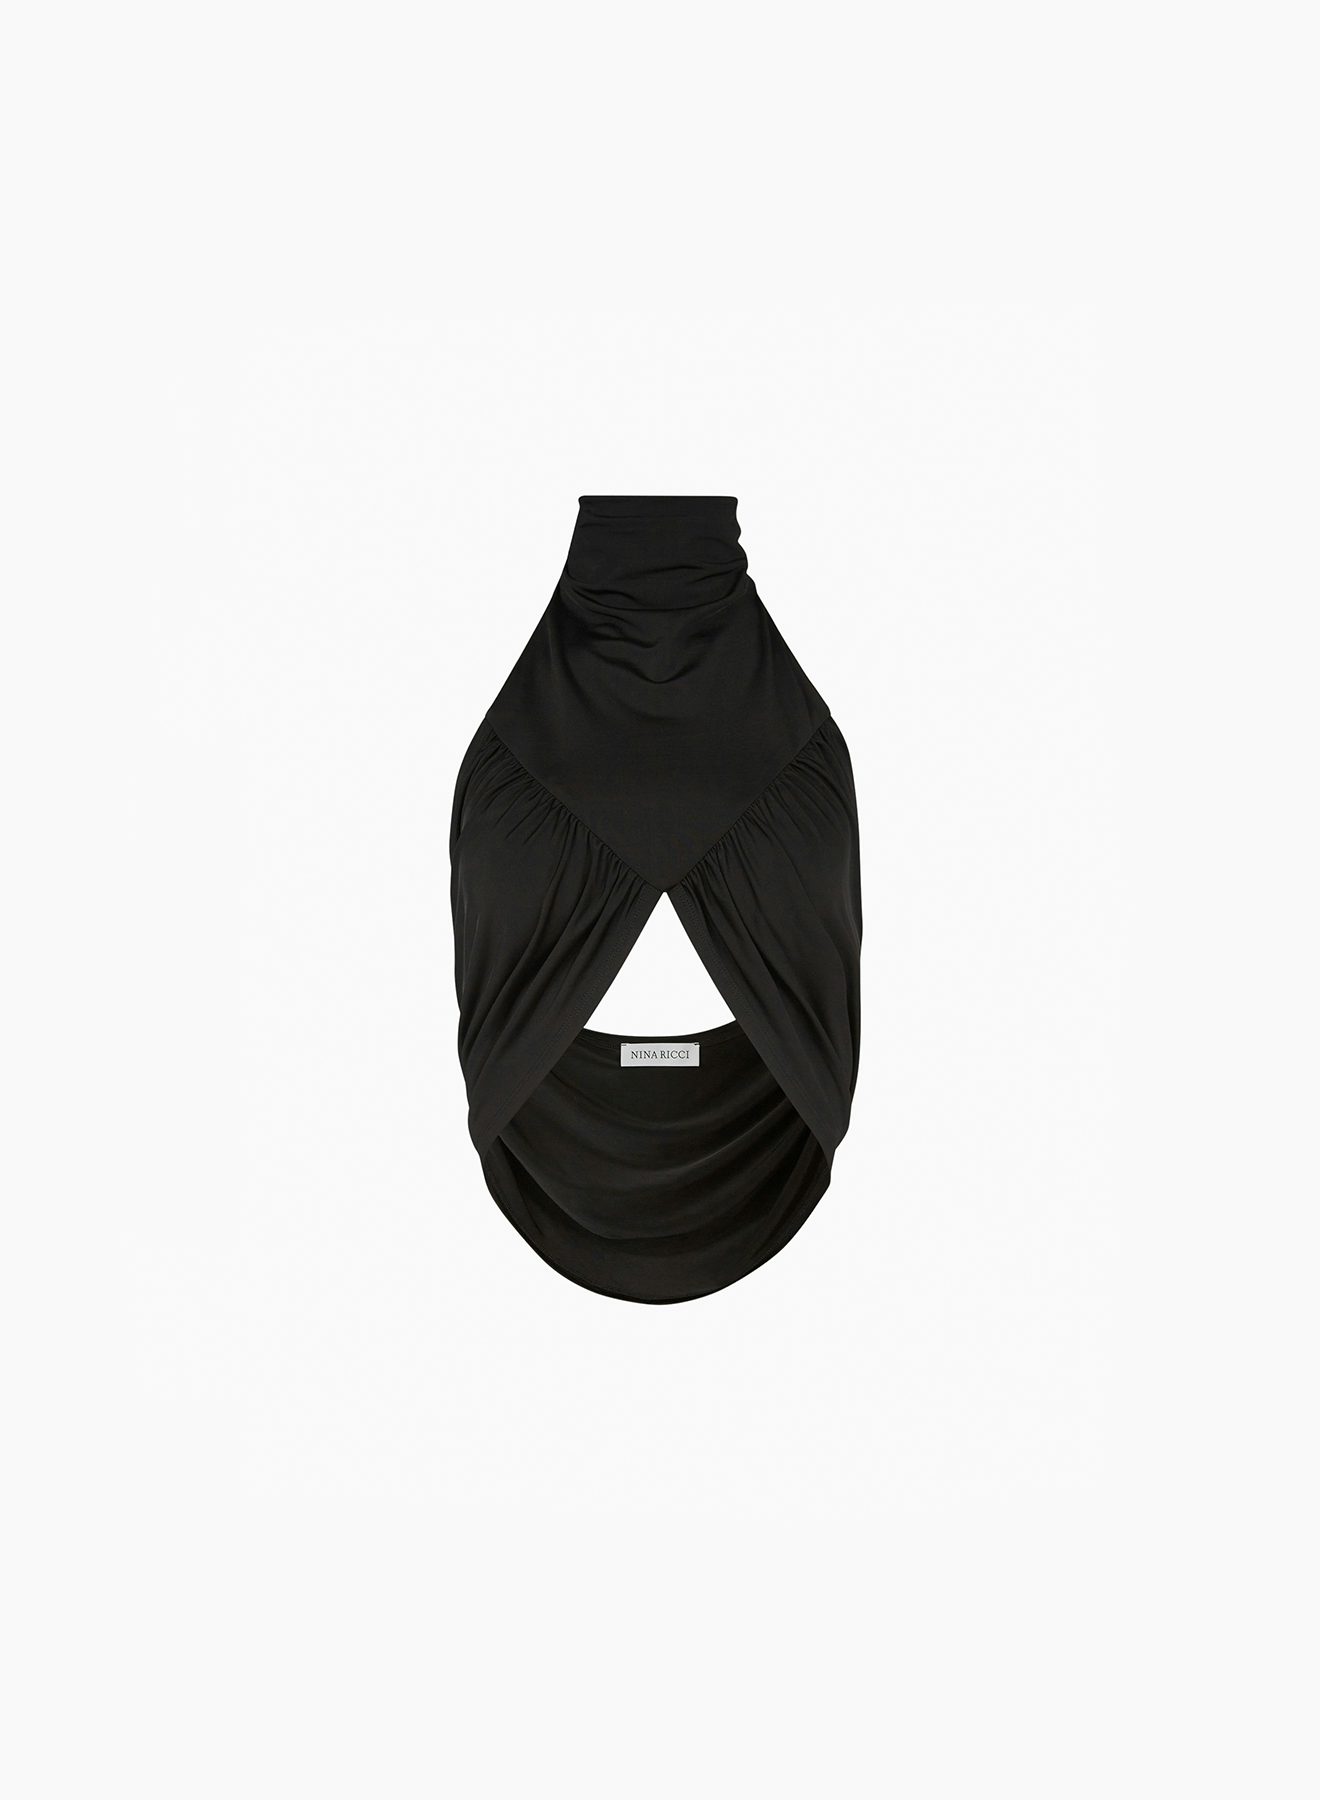 Draped halter top in black - Nina Ricci